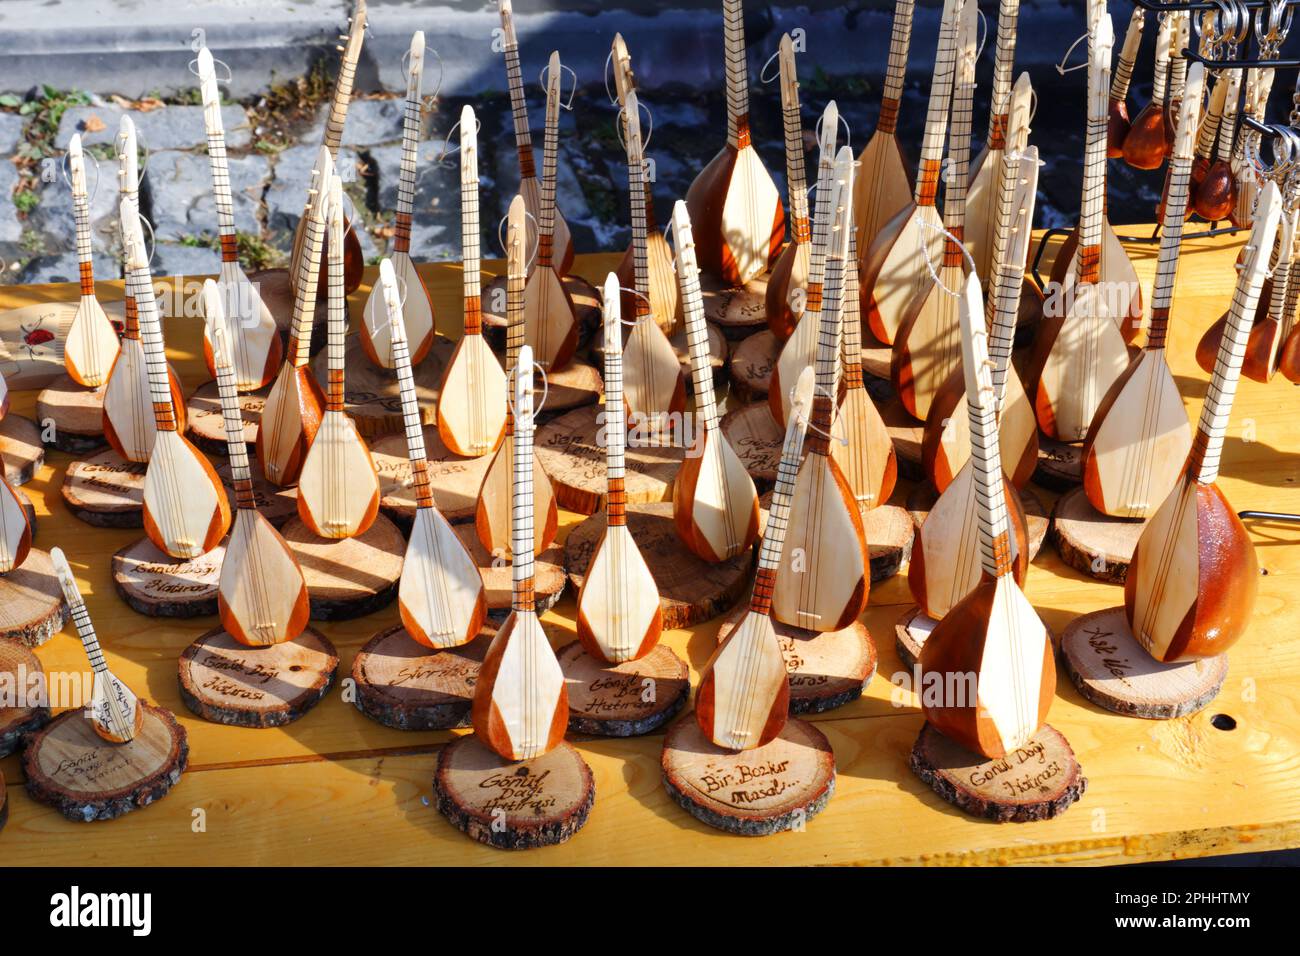 Baglama miniature et saz vendus comme souvenir dans une journée ensoleillée en plein air. Baglama est un instrument de musique turc typique qui se joue souvent dans la culture turque. Banque D'Images